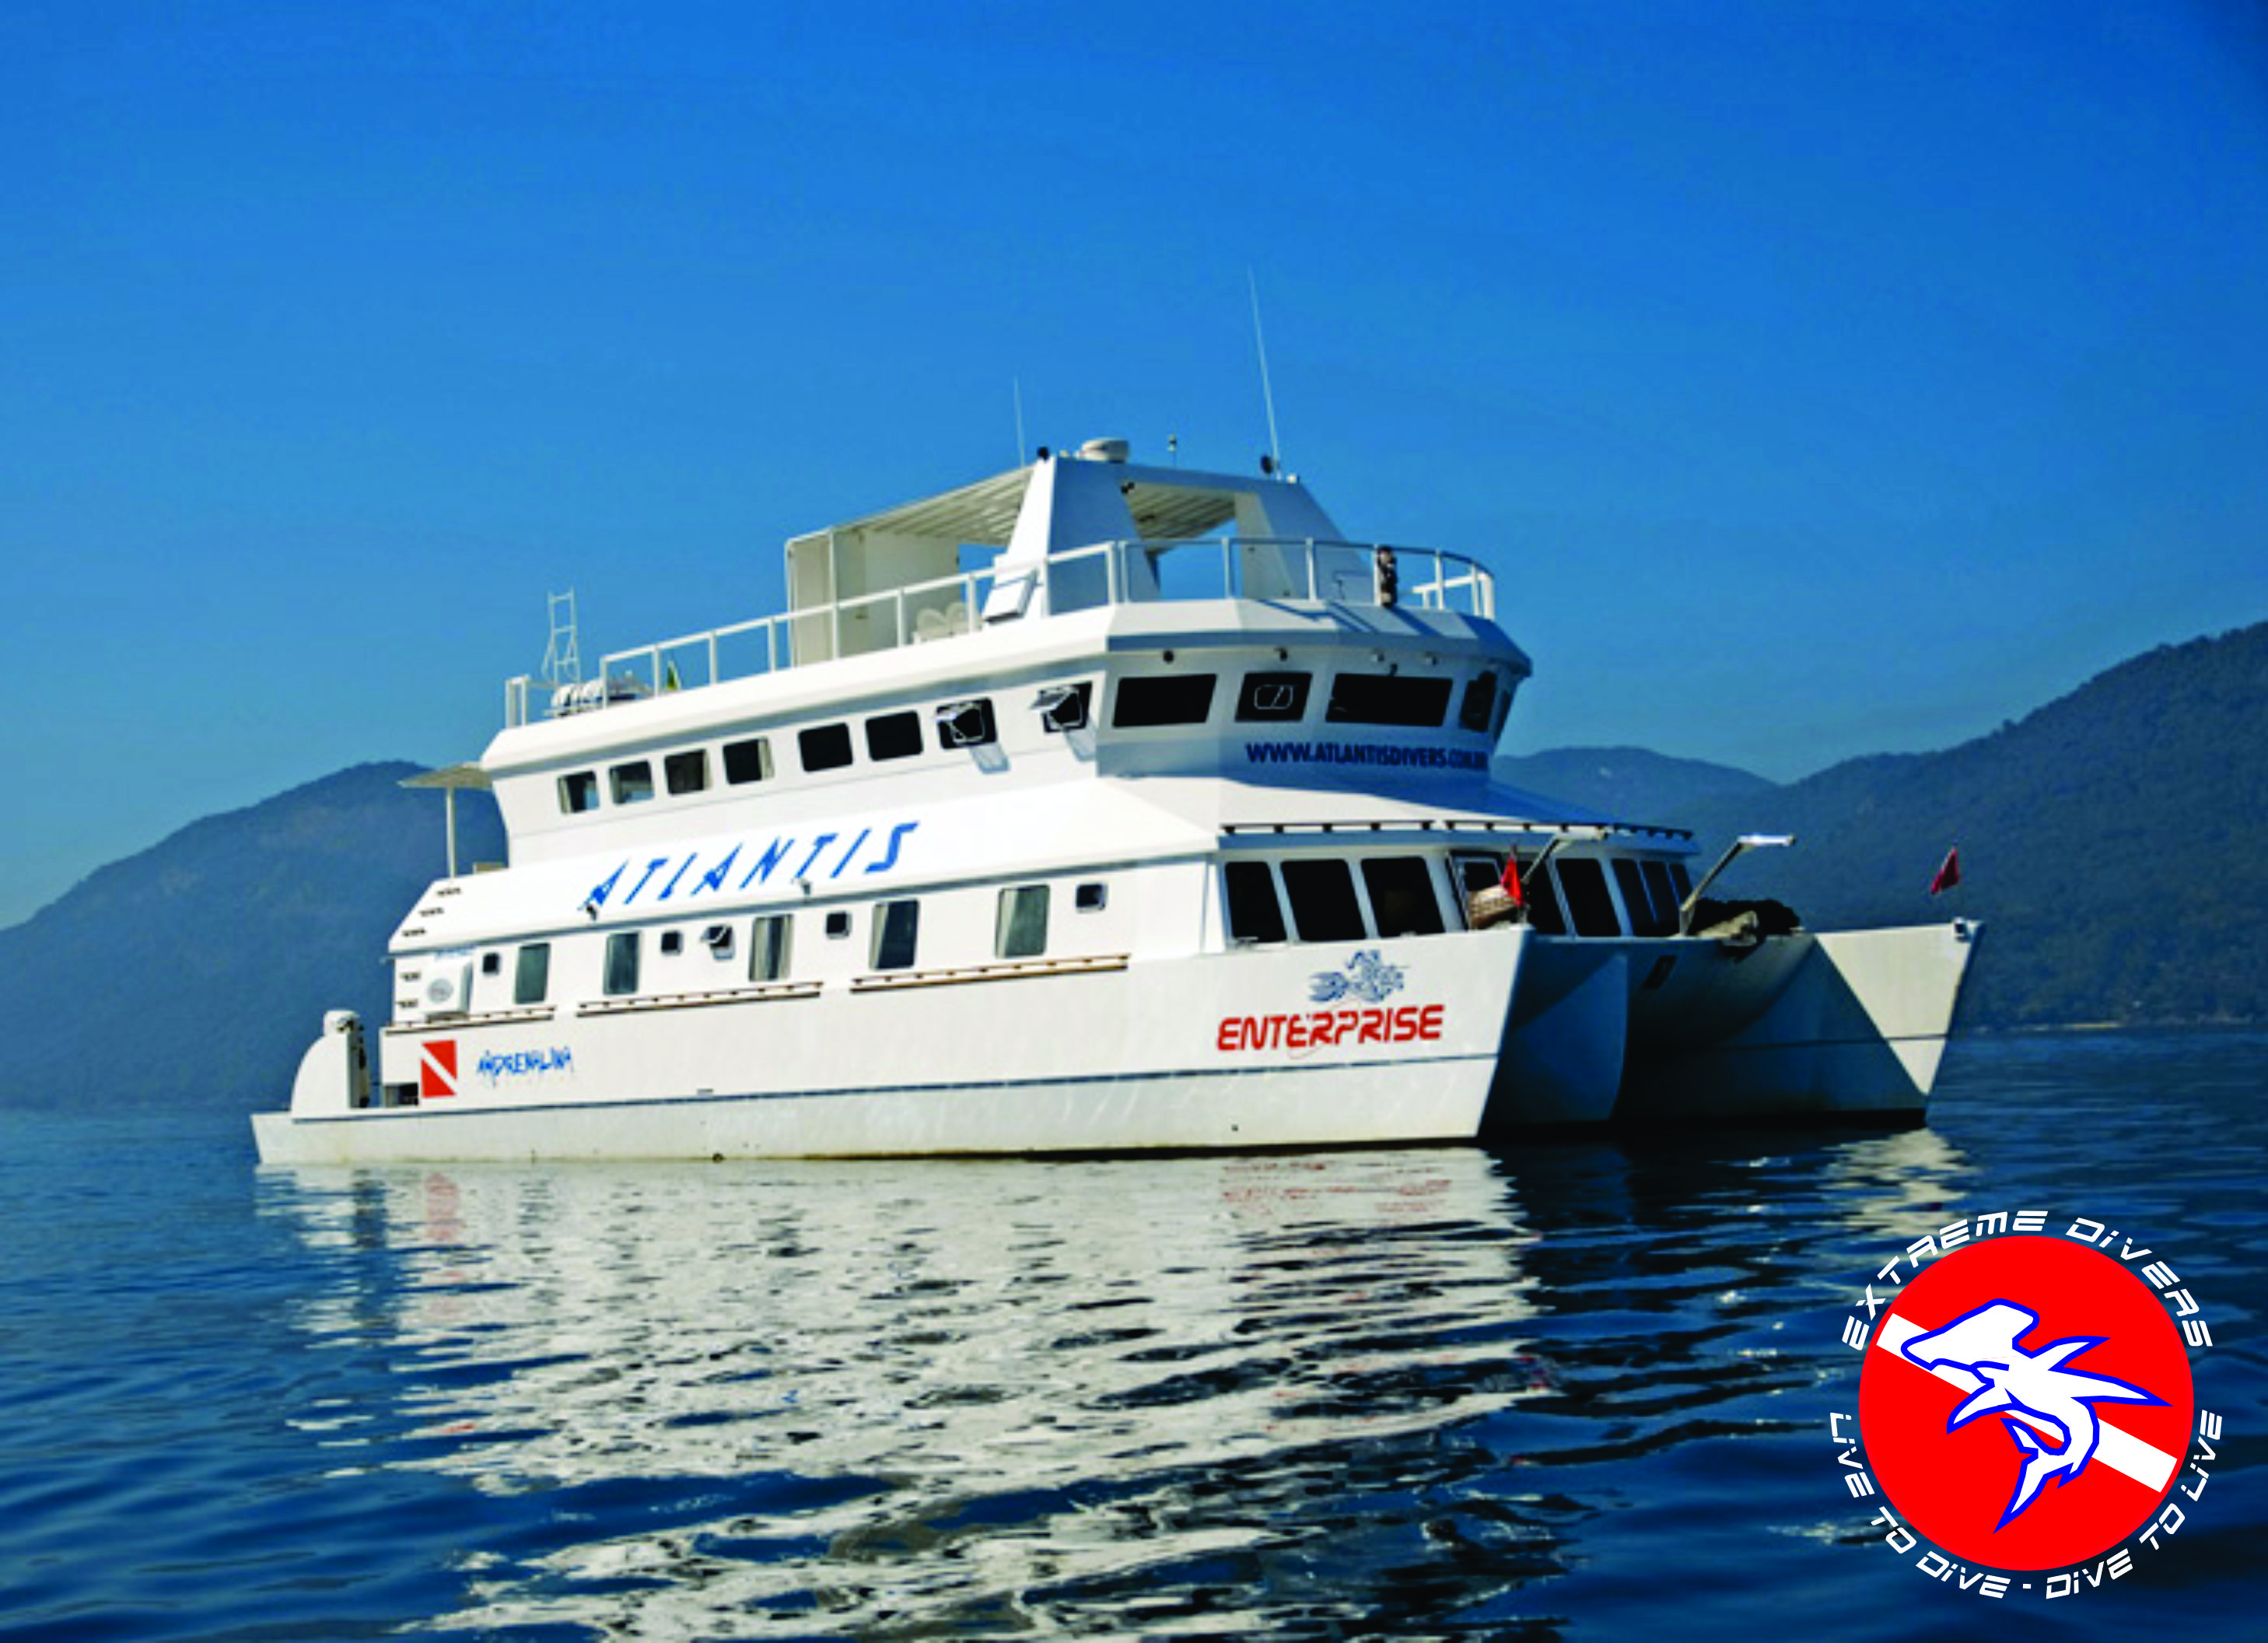 Live Aboard Enterprise XXII – Reserva Exclusiva parcelado em até 8x – 25 e 26 de Outubro de 2014  – Até 8 Mergulhos!!!